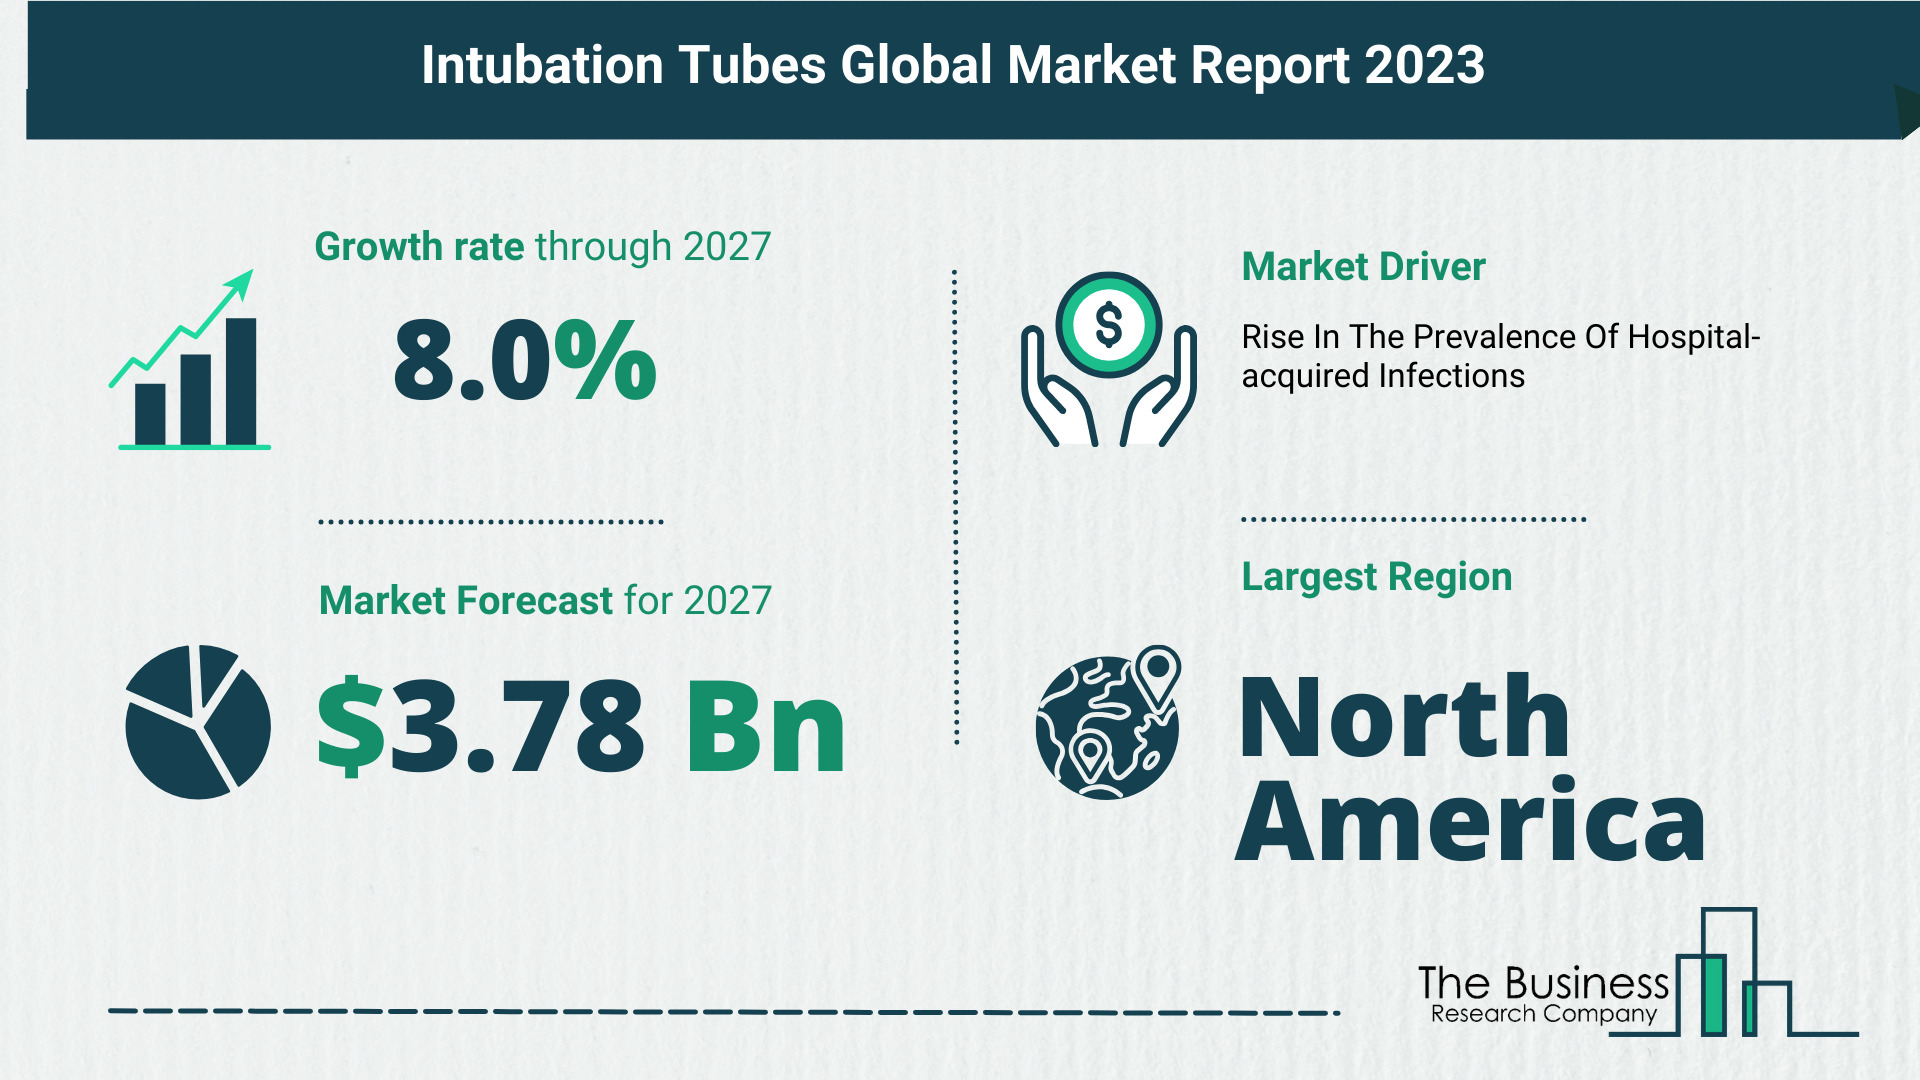 Global Intubation Tubes Market